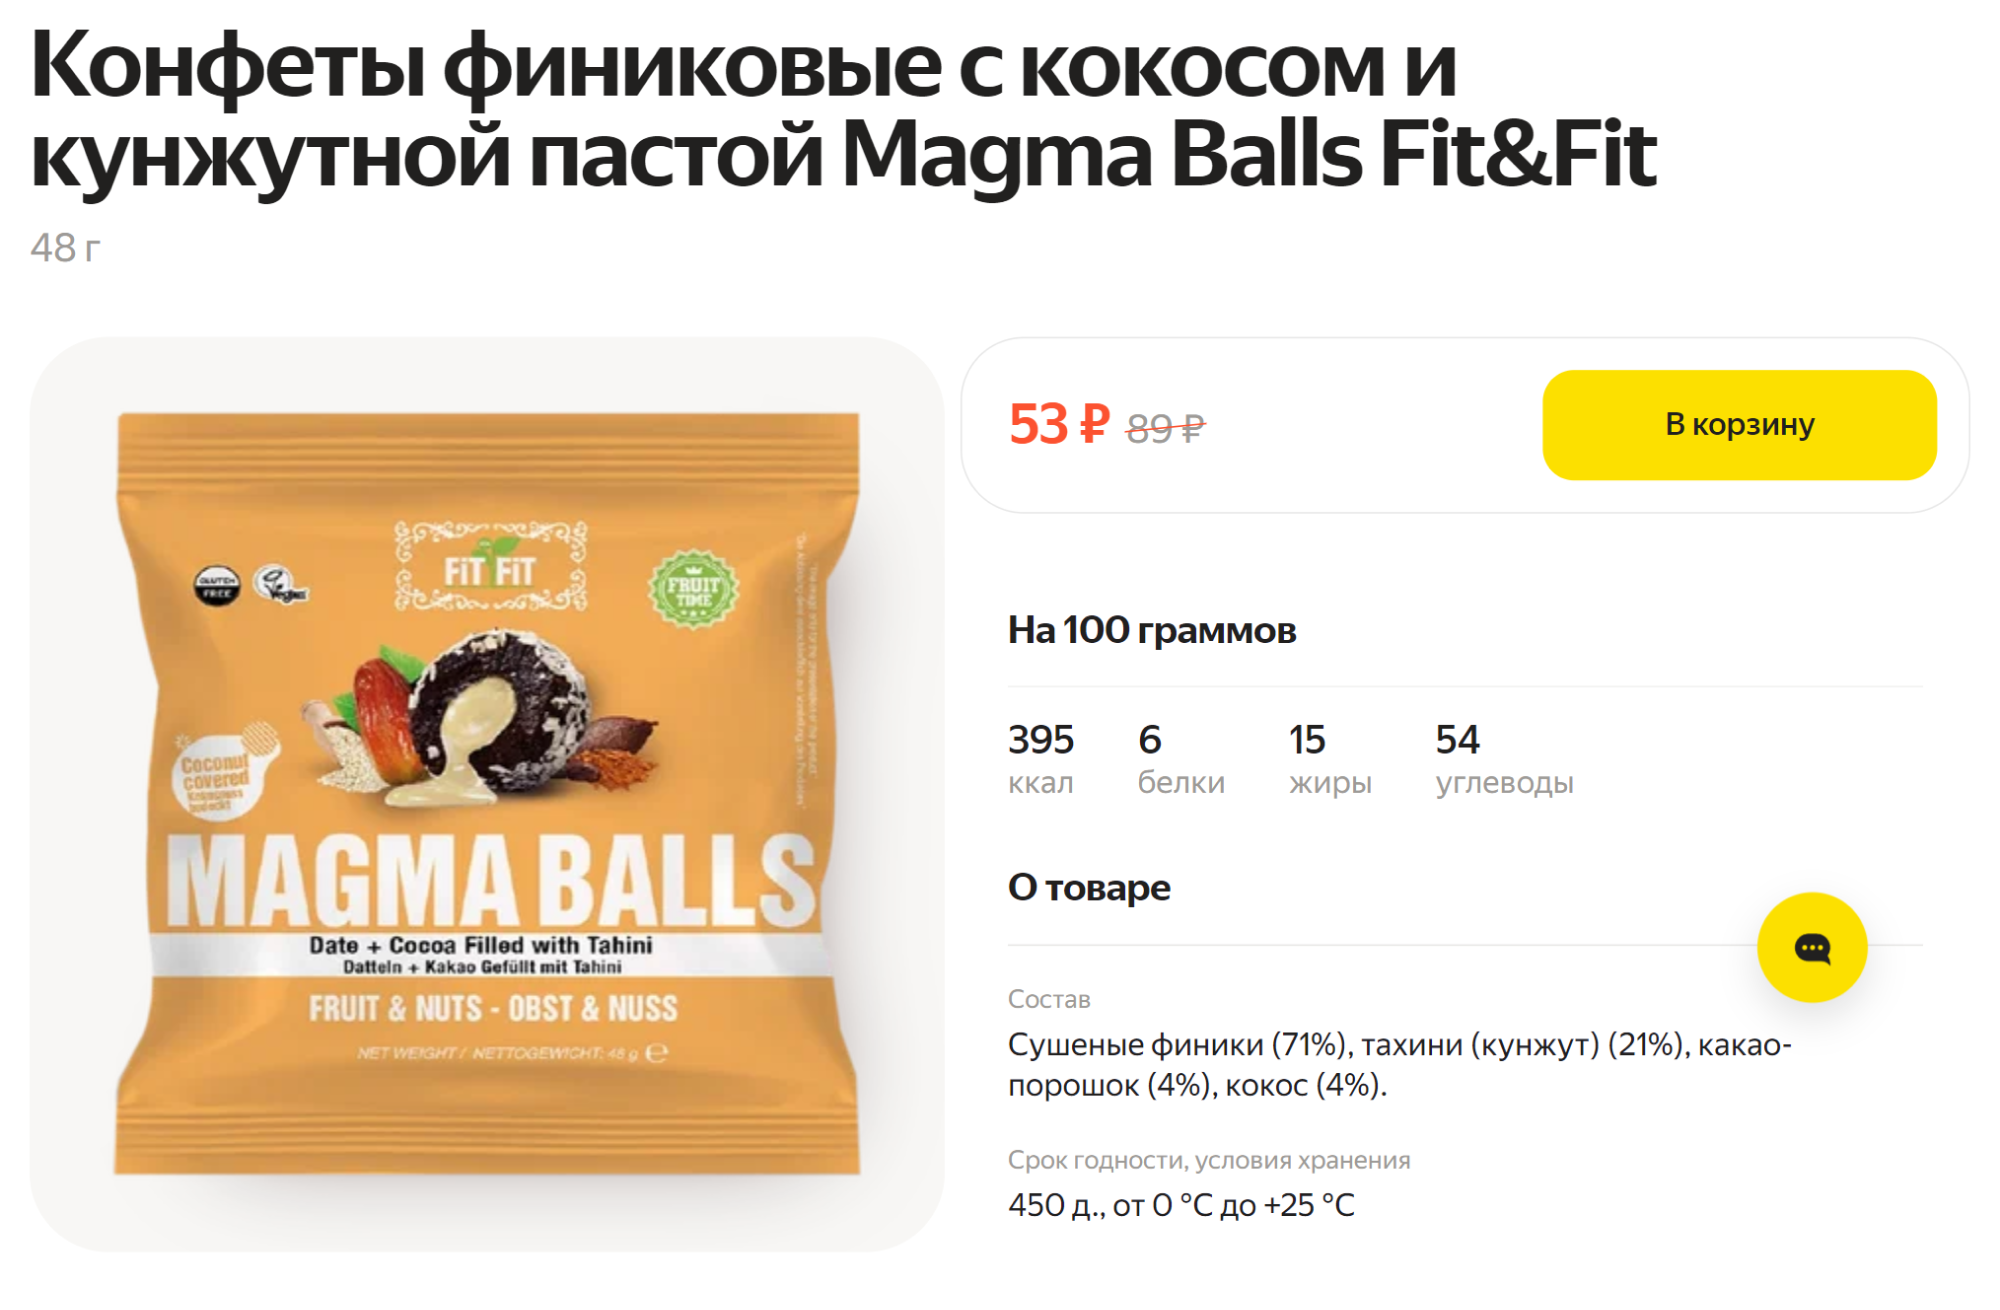 Сладко без лишних ингредиентов: в составе только финики, кунжут, какао и кокос. Источник: lavka.yandex.ru